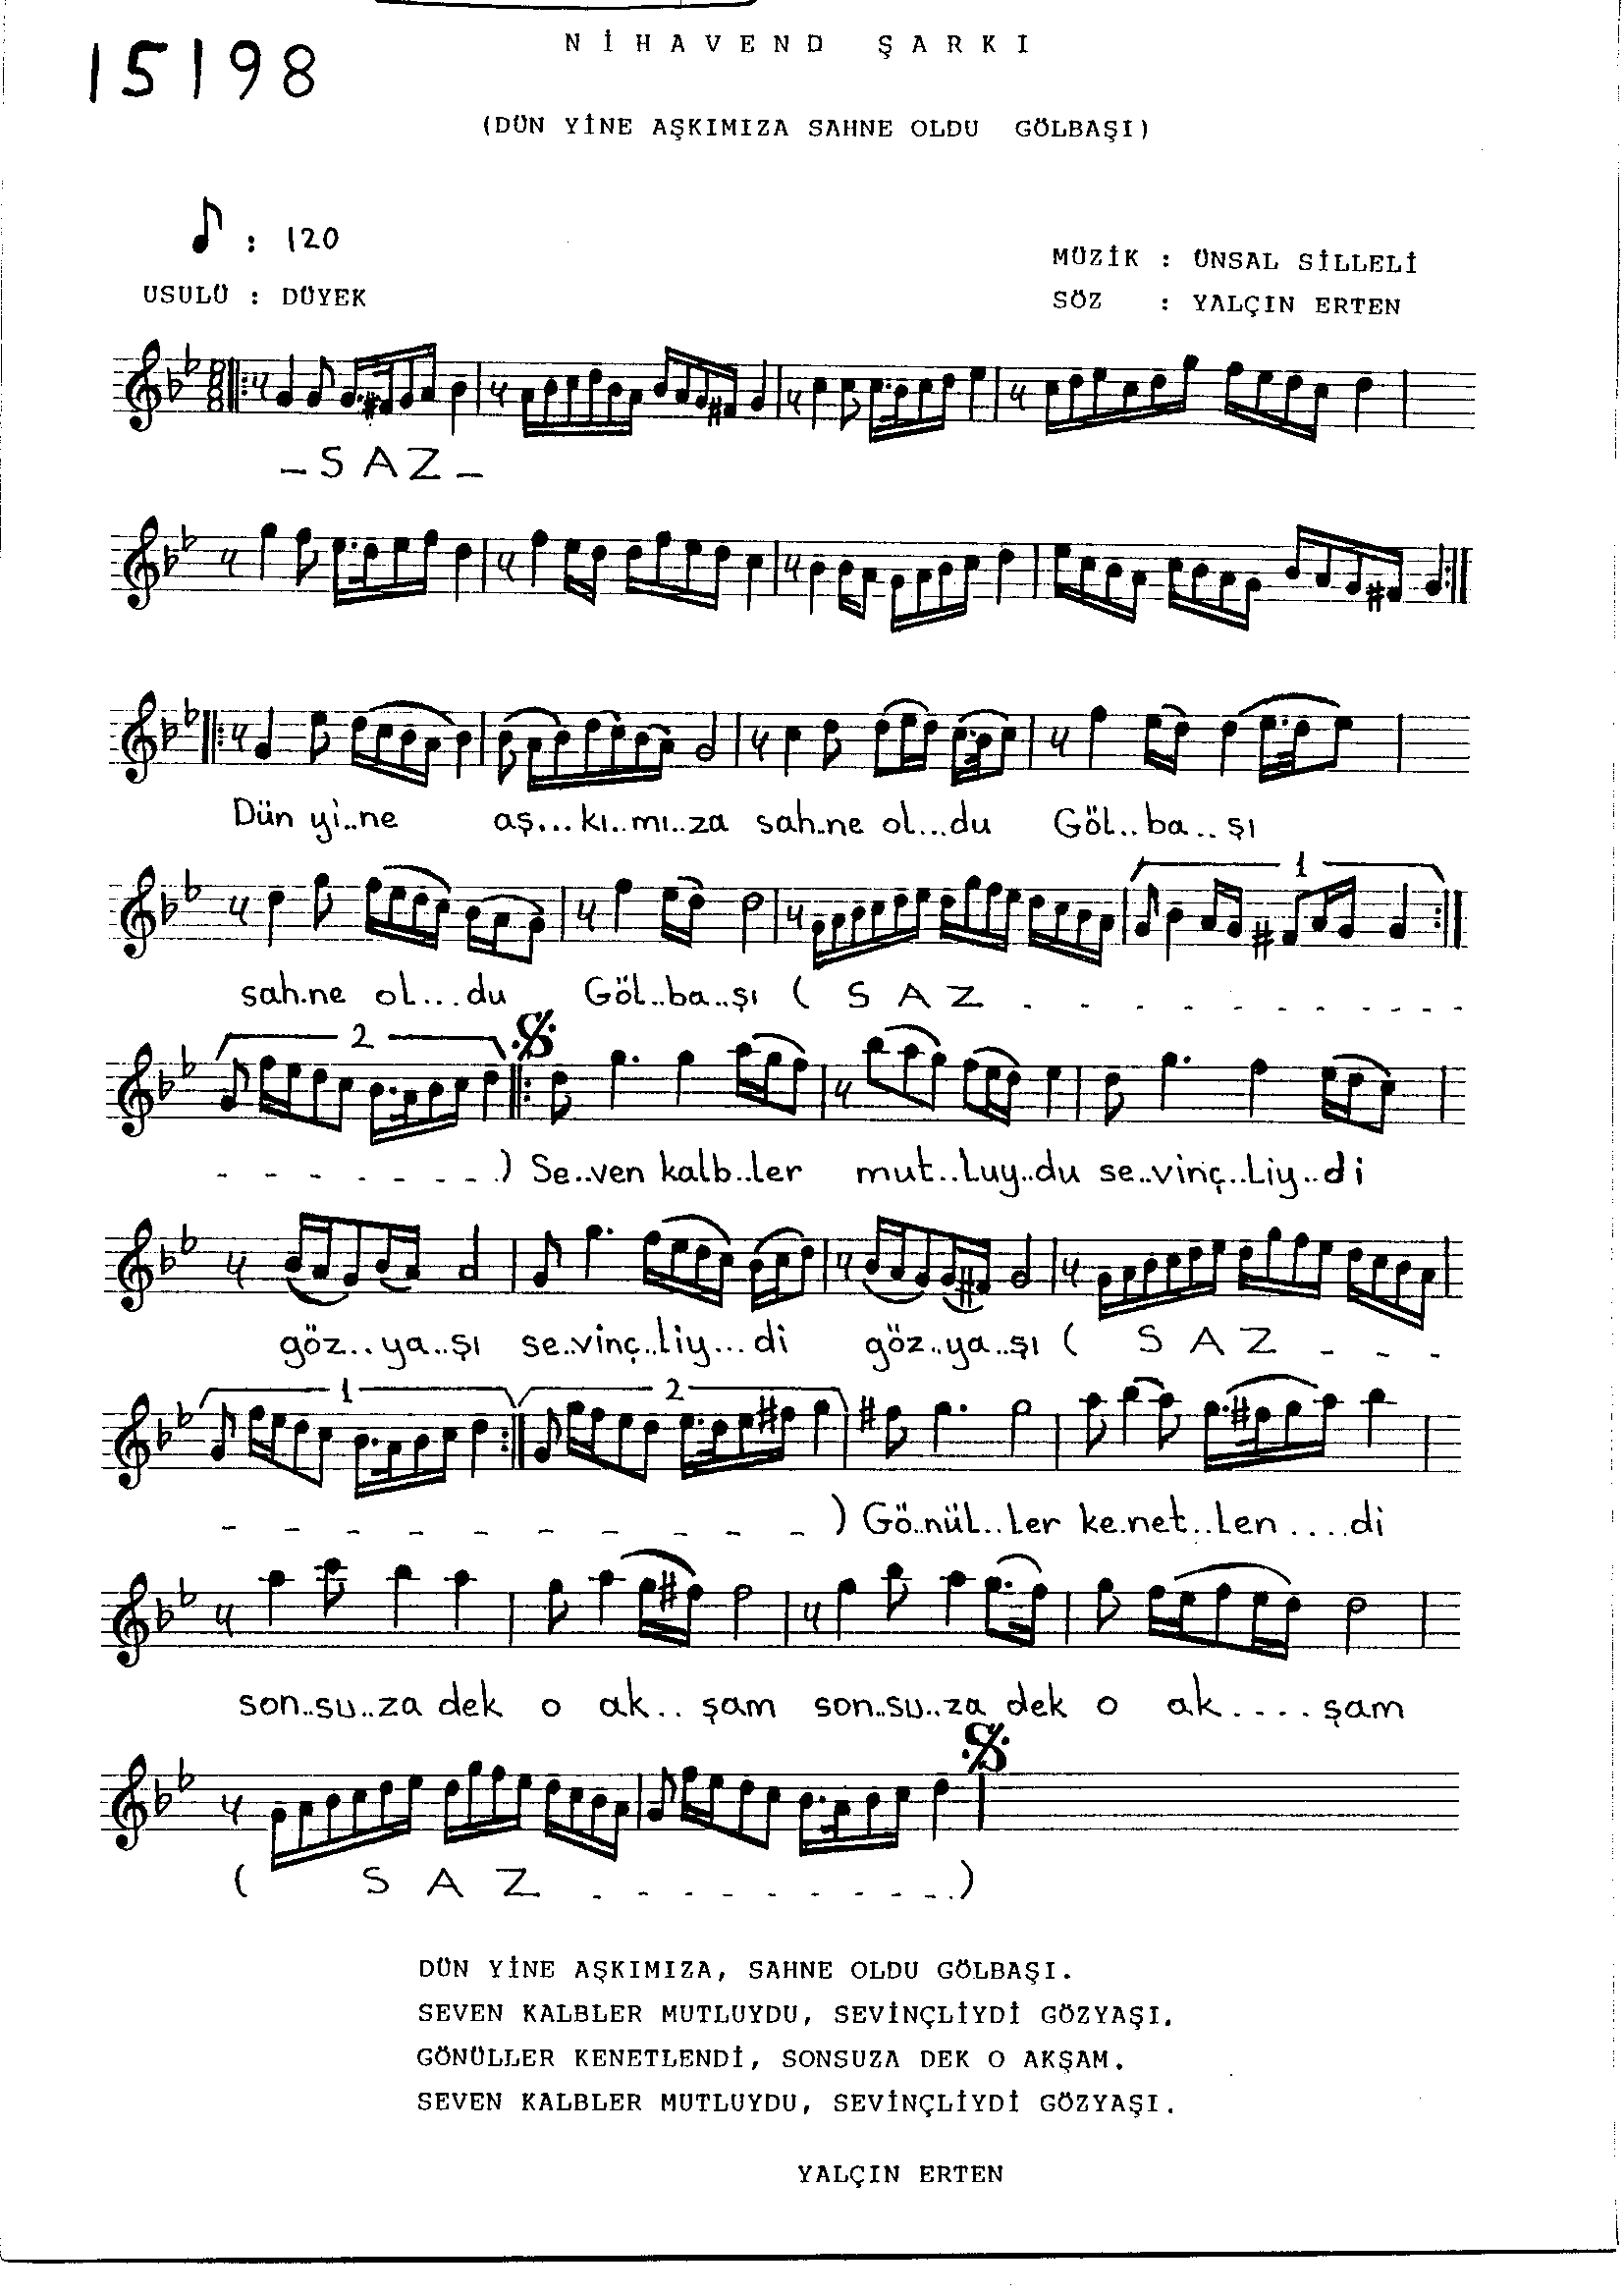 Nihâvend - Şarkı - Ünsal Silleli - Sayfa 1